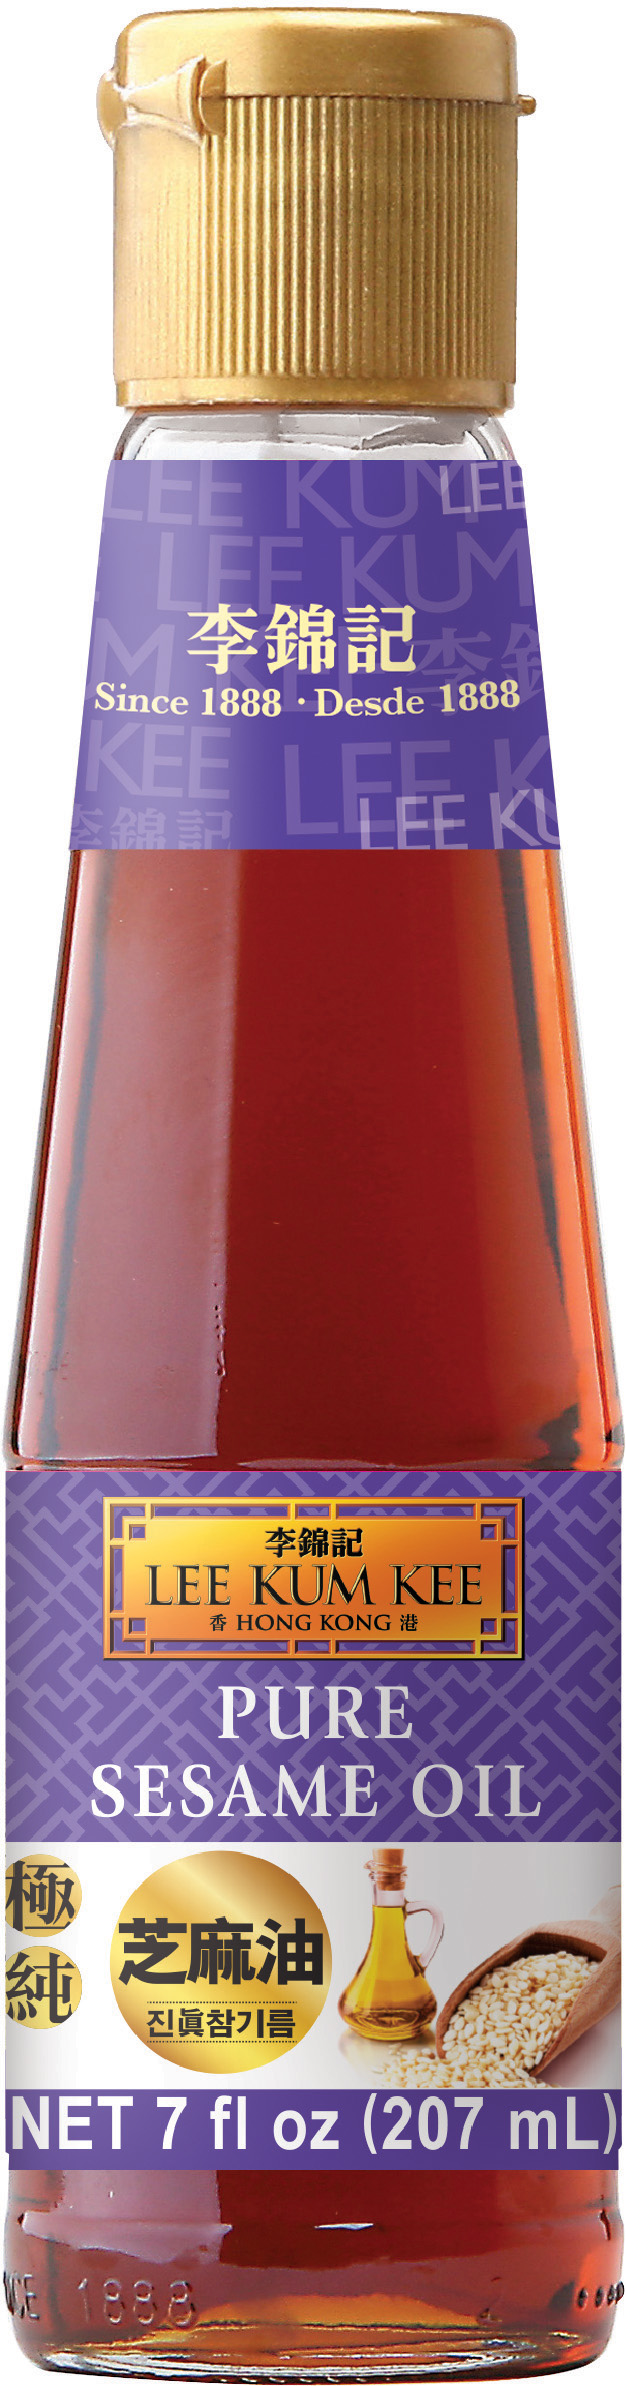 Pure Sesame Oil 7 fl oz (207 ml), Bottle